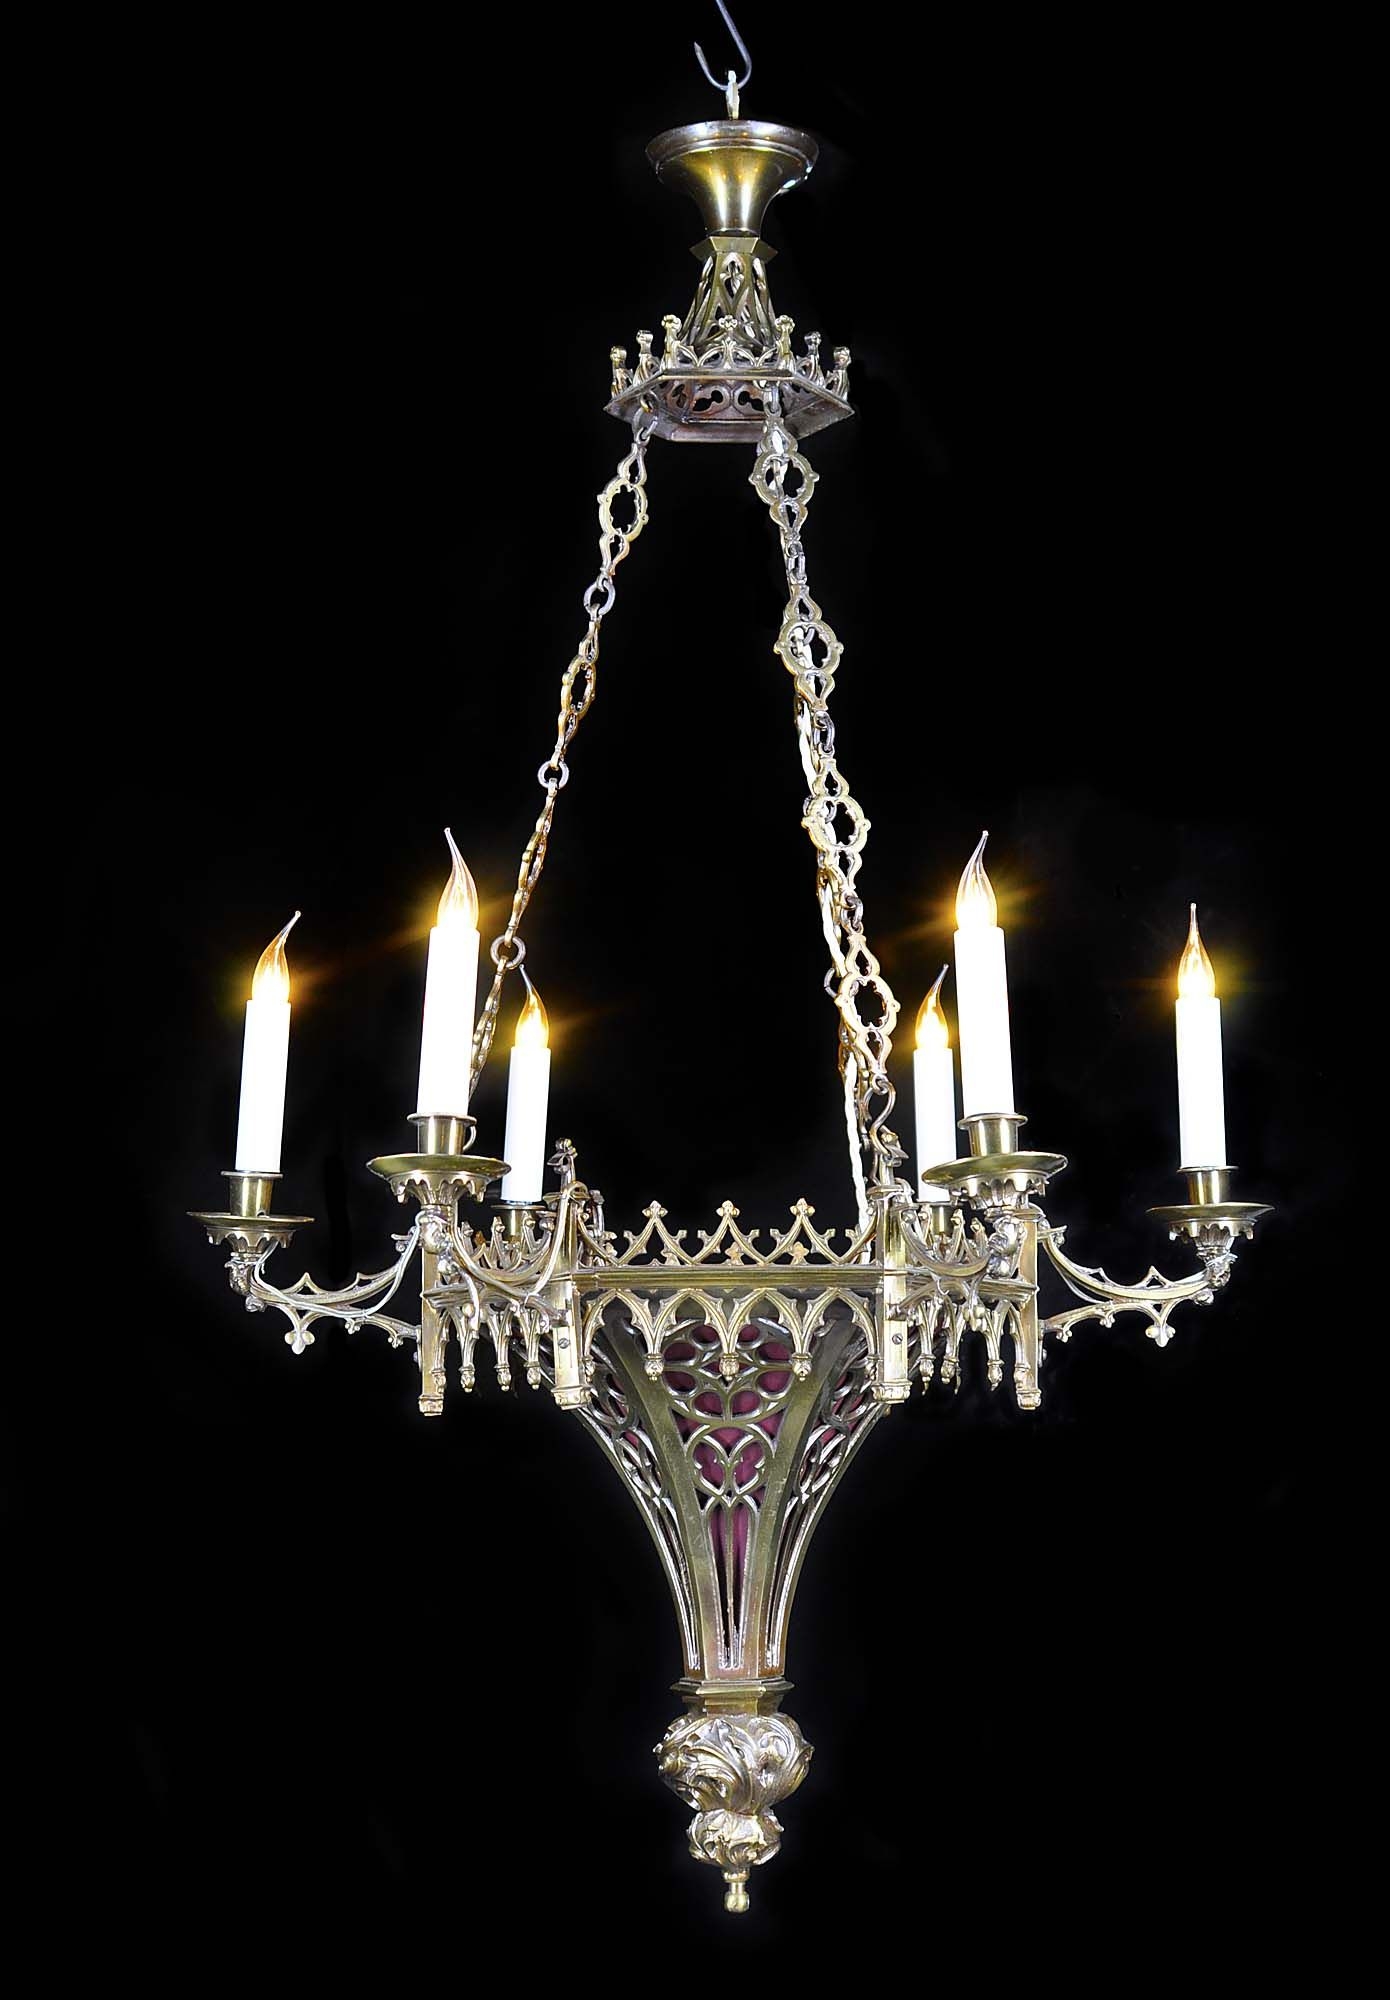 Gothic chandelier 7